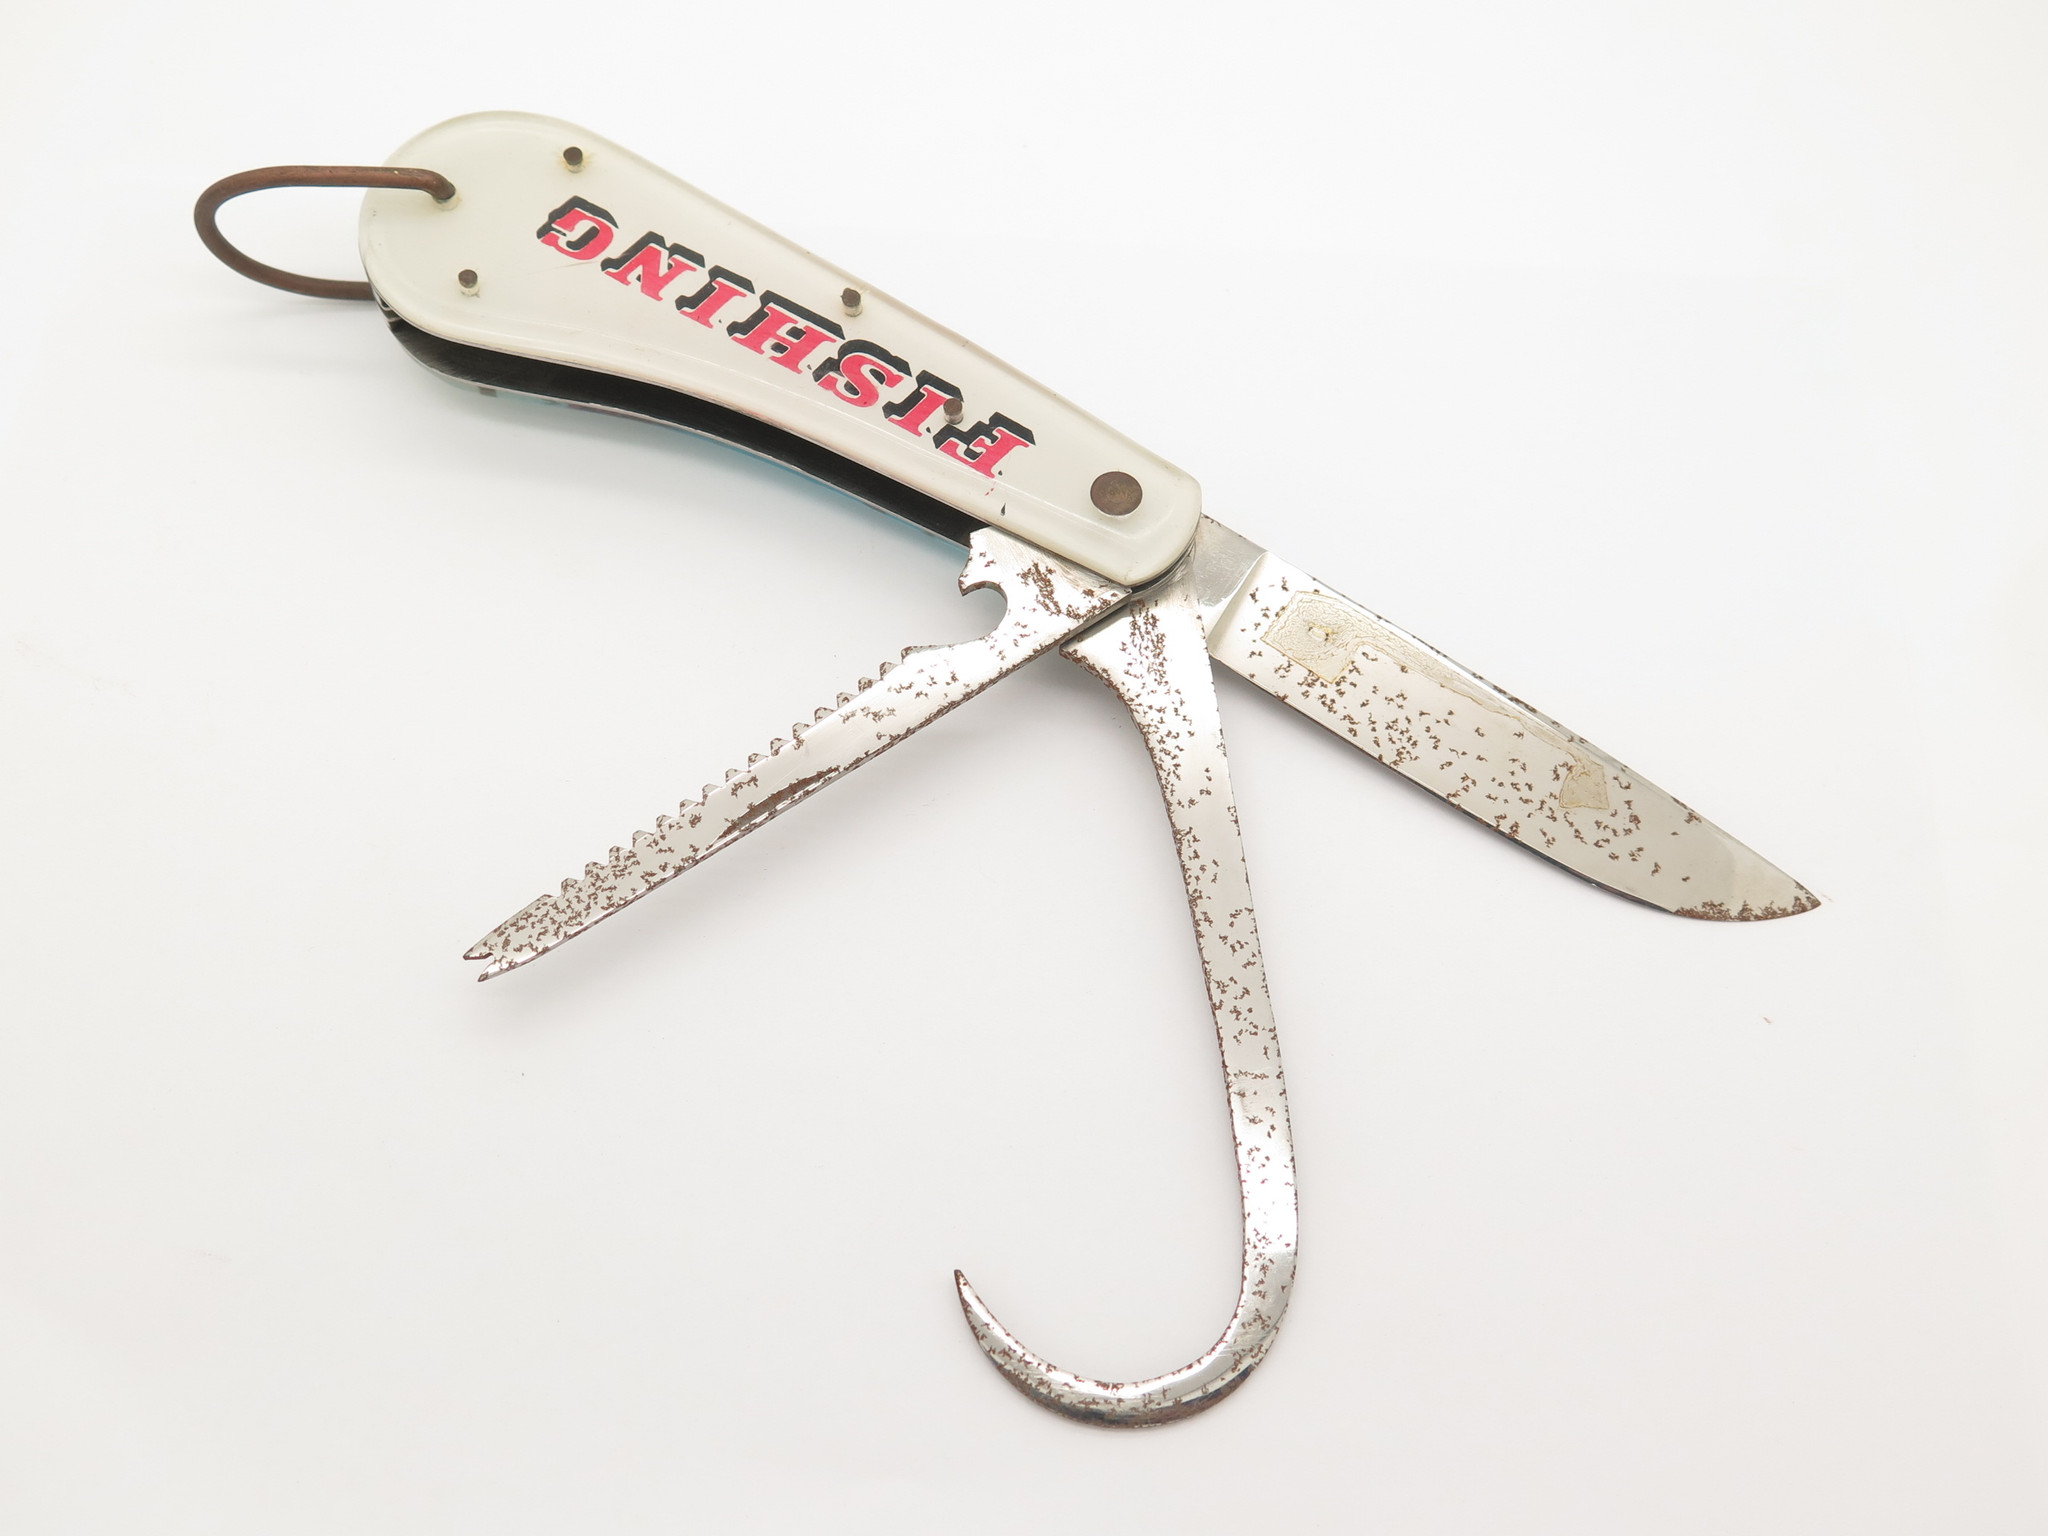 Vintage 1960s Seki Japan Folding Fishing Knife 3 Blade Gaff Hook Saw 5.1 -  ePrague, LLC